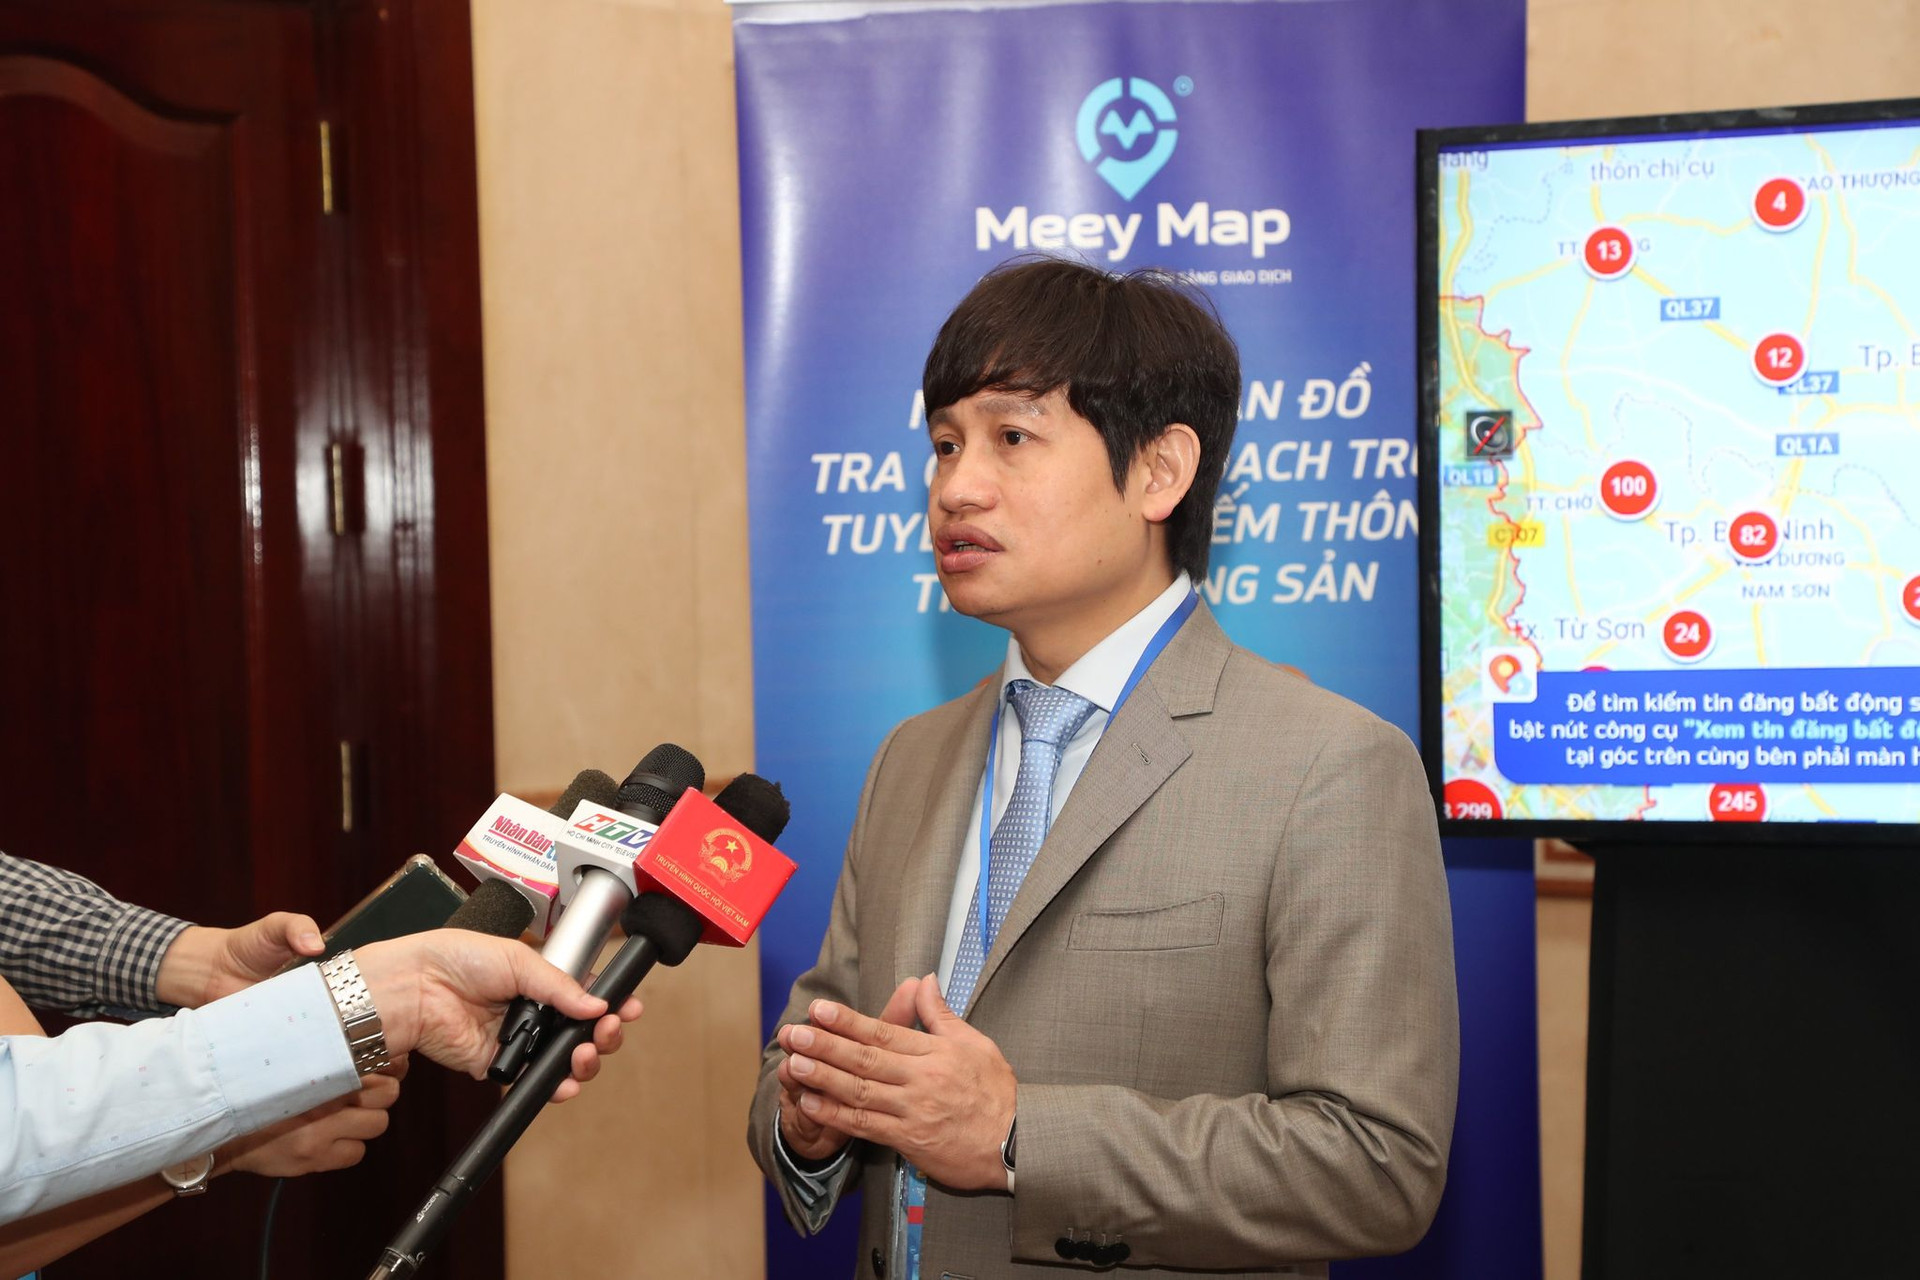 Ông Hoàng Mai Chung chia sẻ: “Meey Map là sản phẩm trọng điểm mà trong thời gian này Meey Land rất muốn đưa tới thị trường TP Hồ Chí Minh.